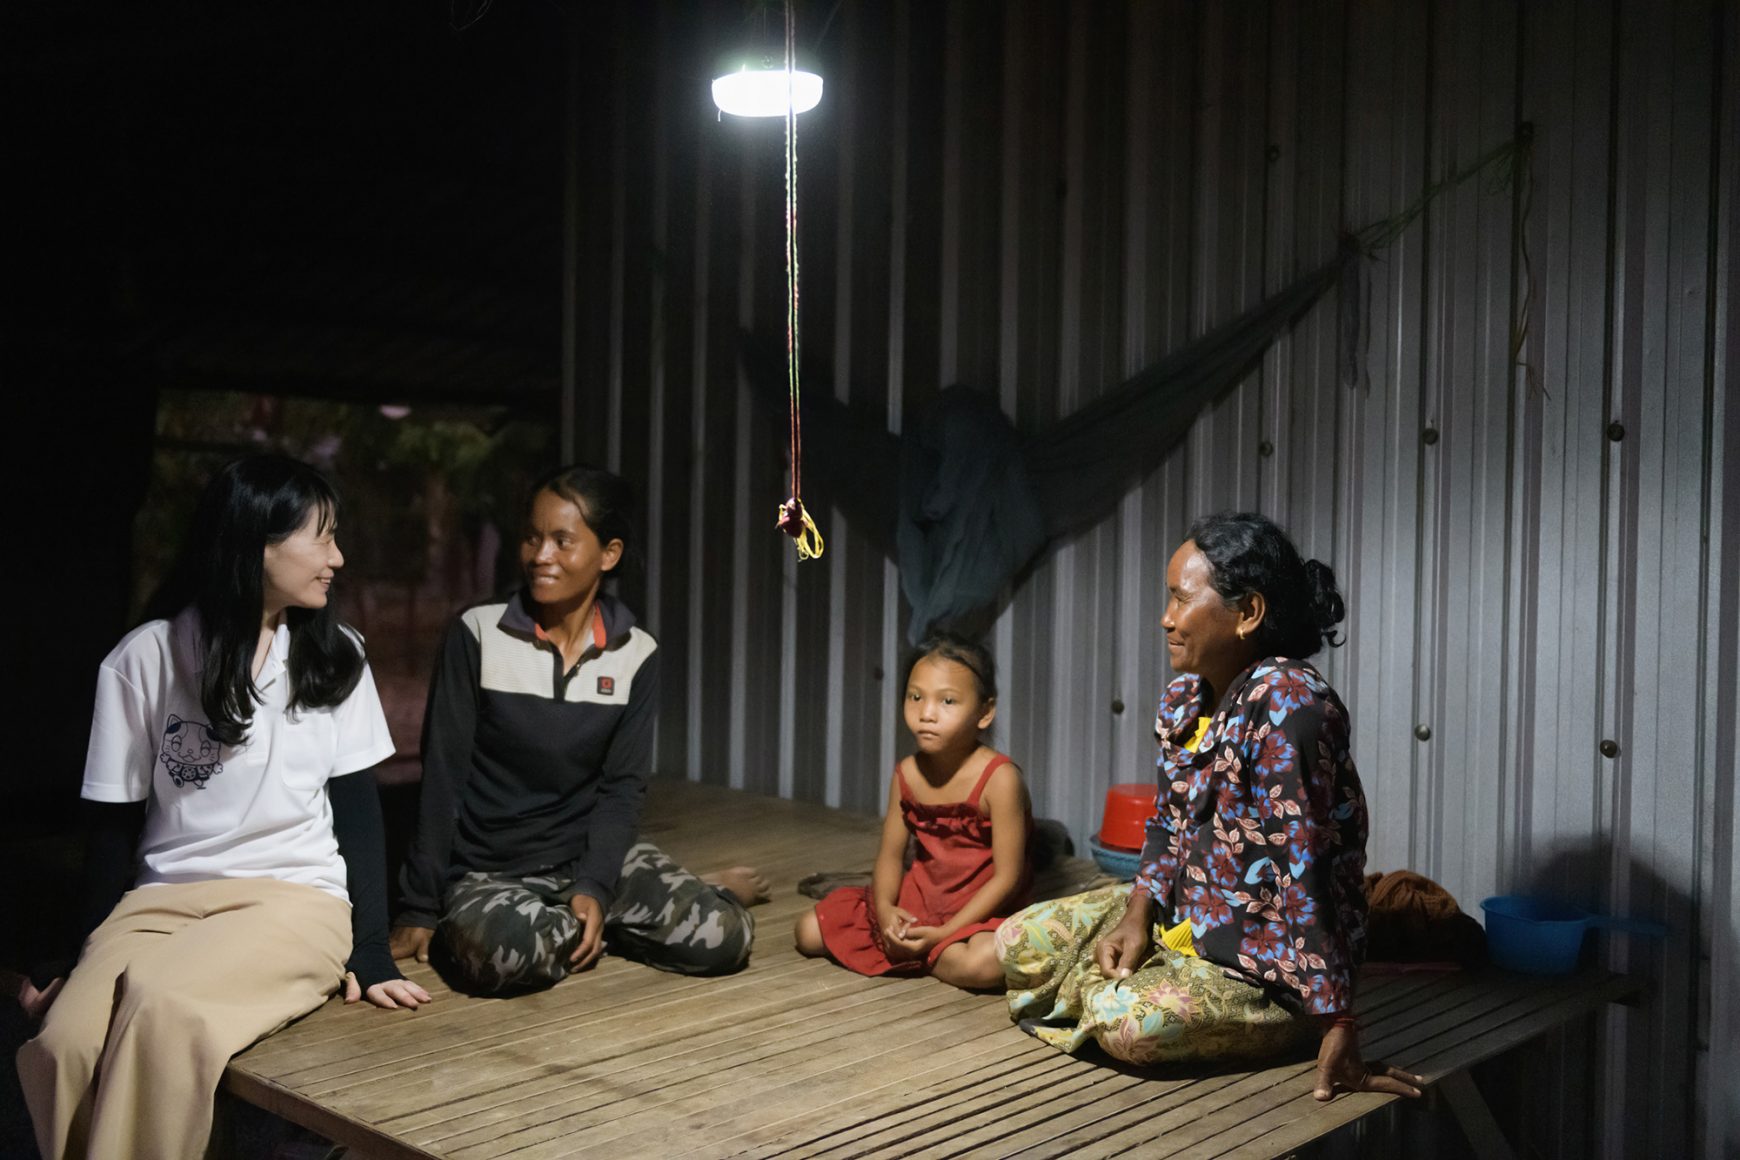 カンボジアの無電化地域にソーラーランタンを寄贈〜パナソニックHPで紹介されました